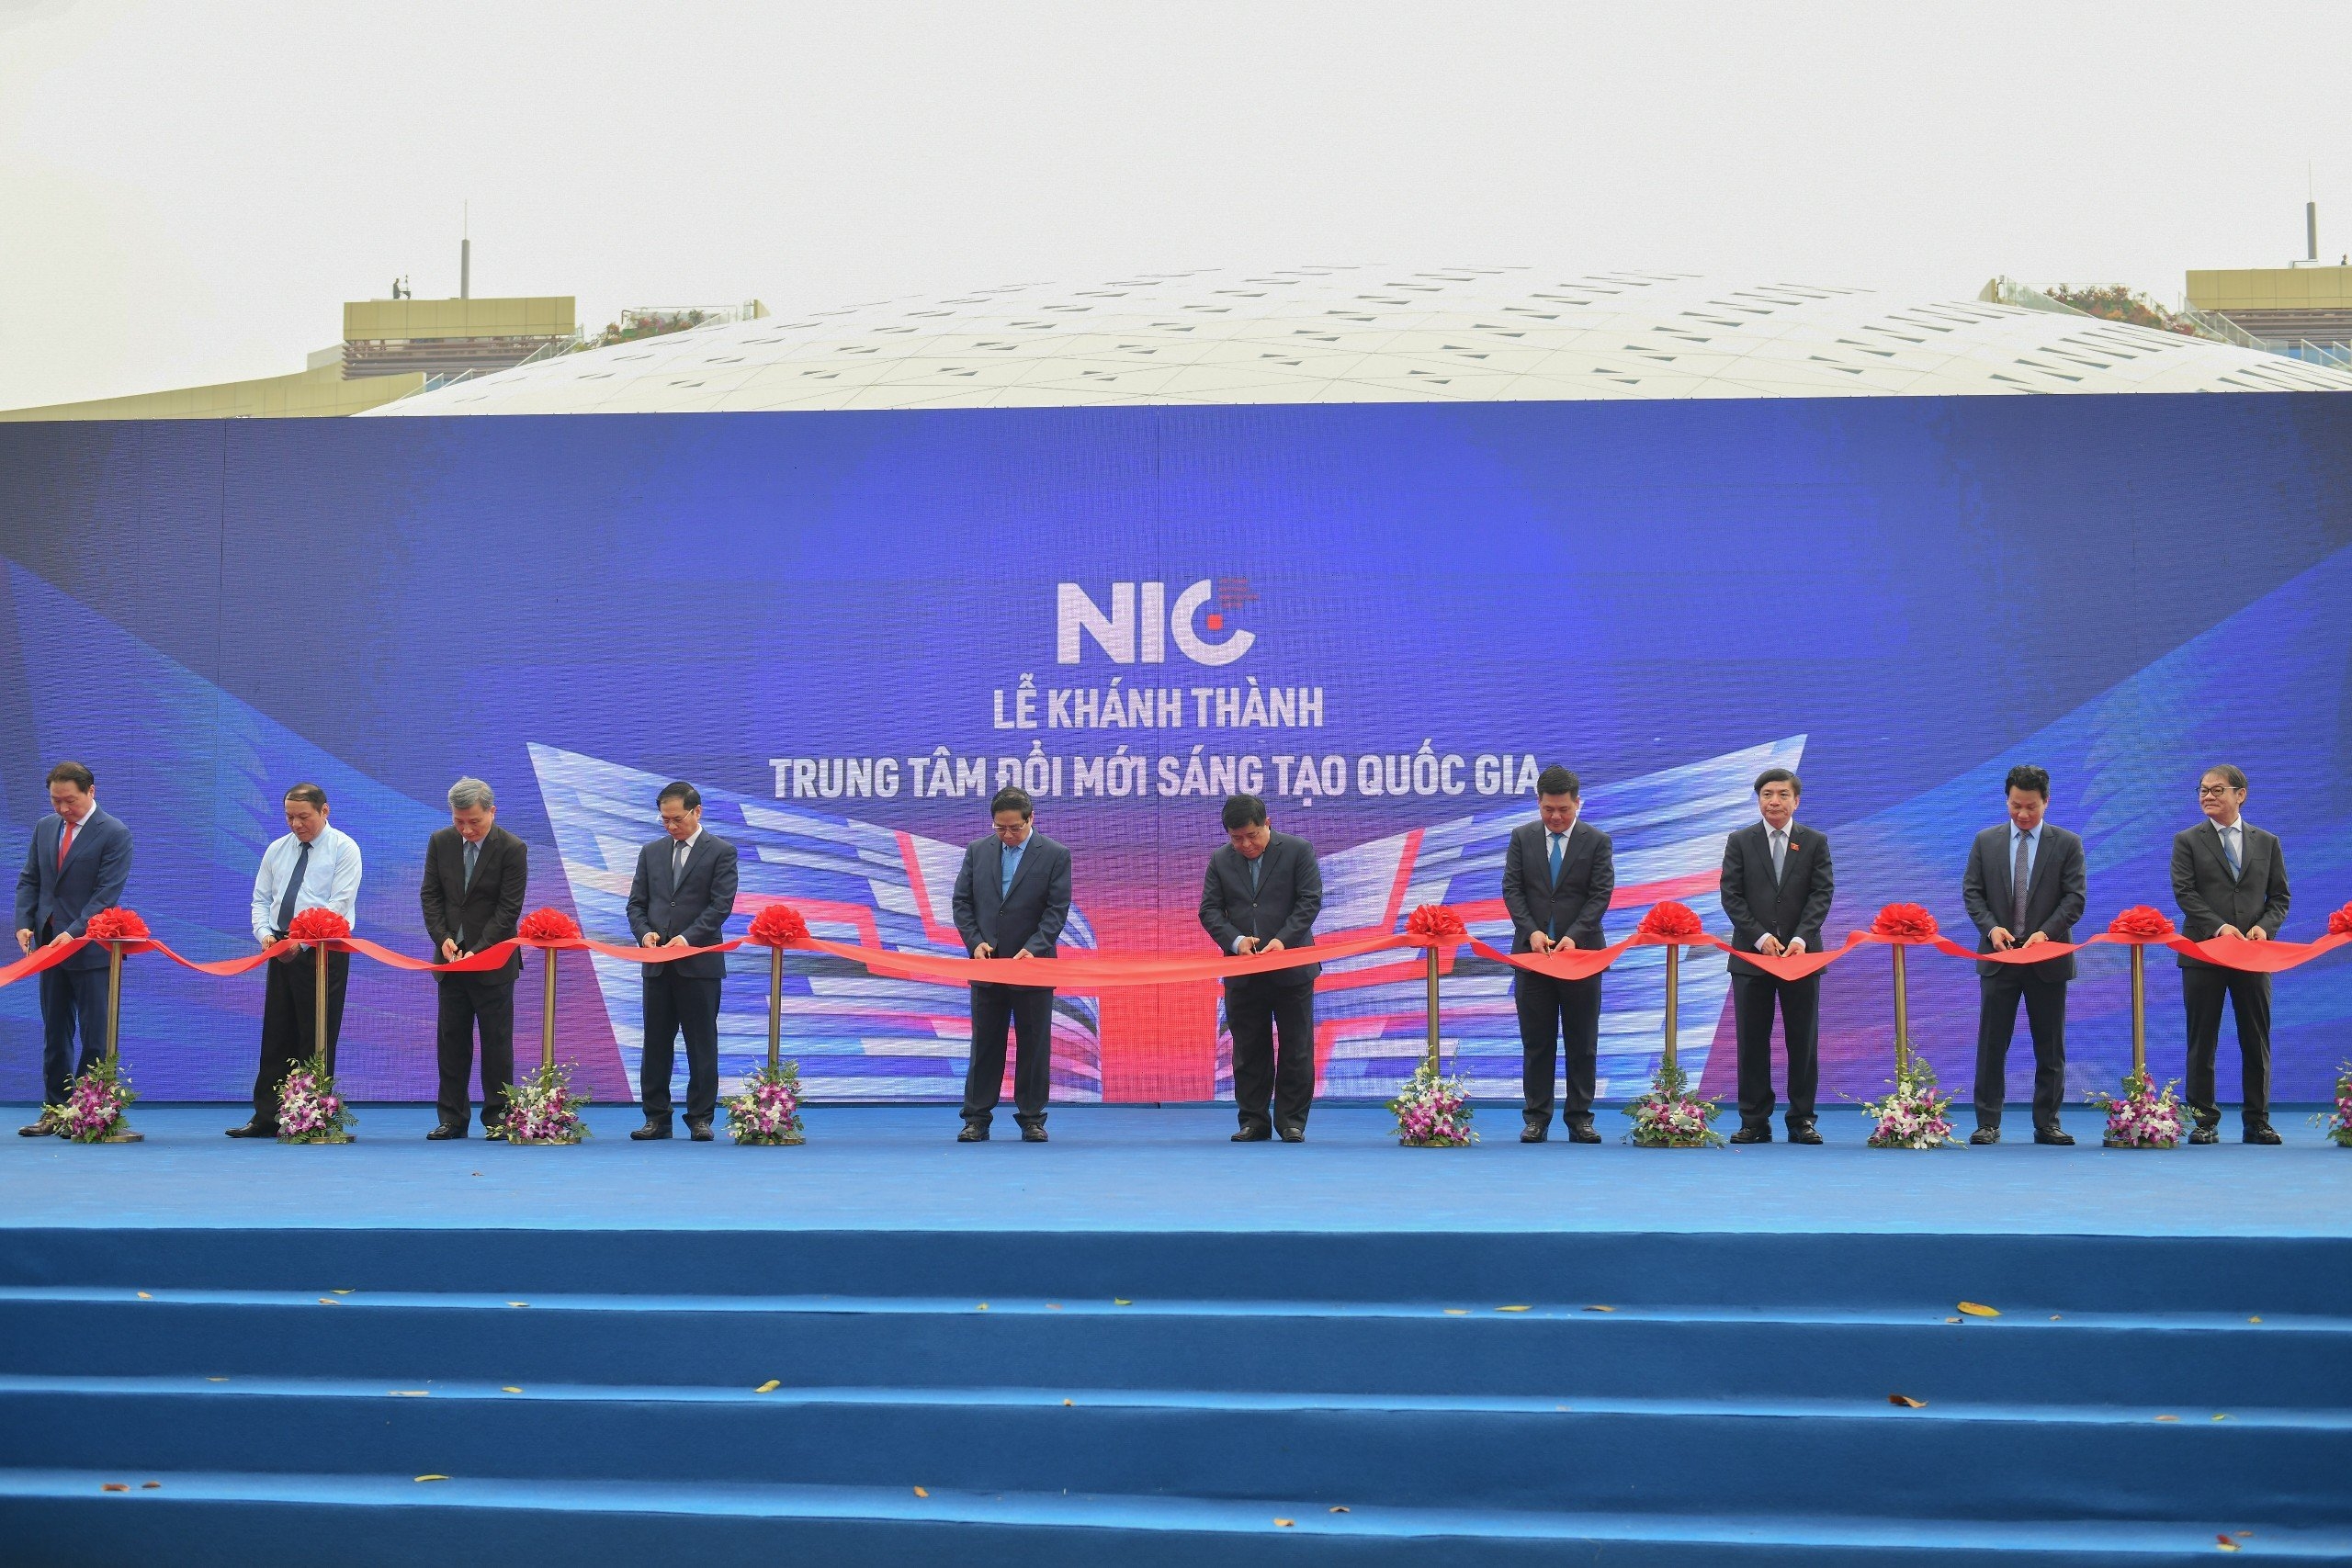 Thủ tướng Phạm Minh Chính: Việc đưa vào khai thác Trung tâm Đổi mới sáng tạo quốc gia tại Hòa Lạc có ý nghĩa to lớn trong phát triển hệ sinh thái khởi nghiệp